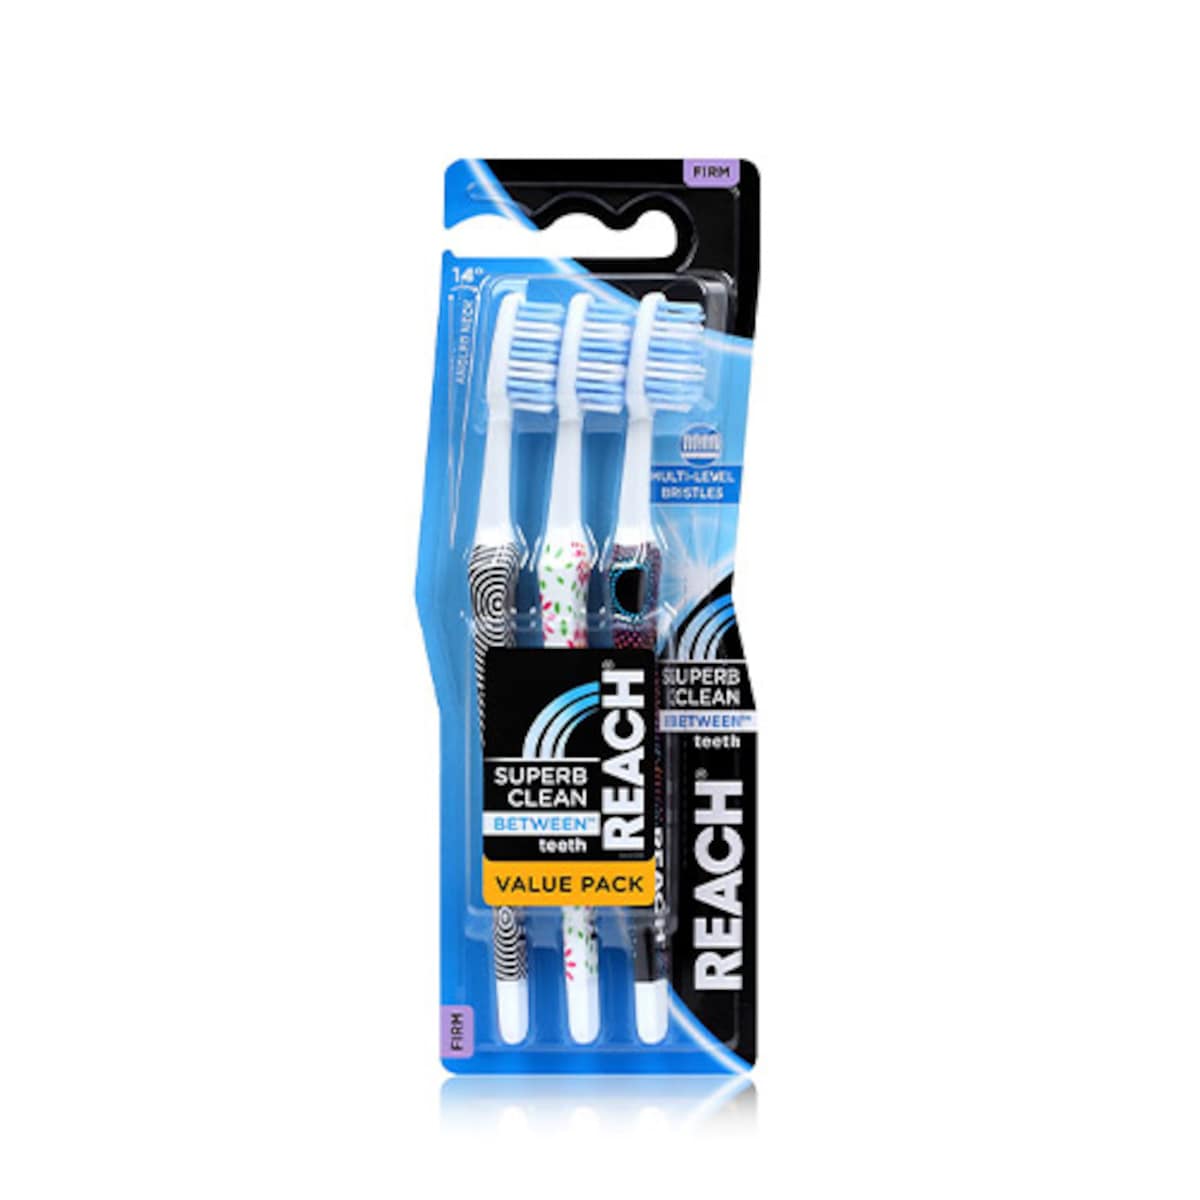 Reach Superb Clean Between Teeth Firm Toothbrush 3 Pack